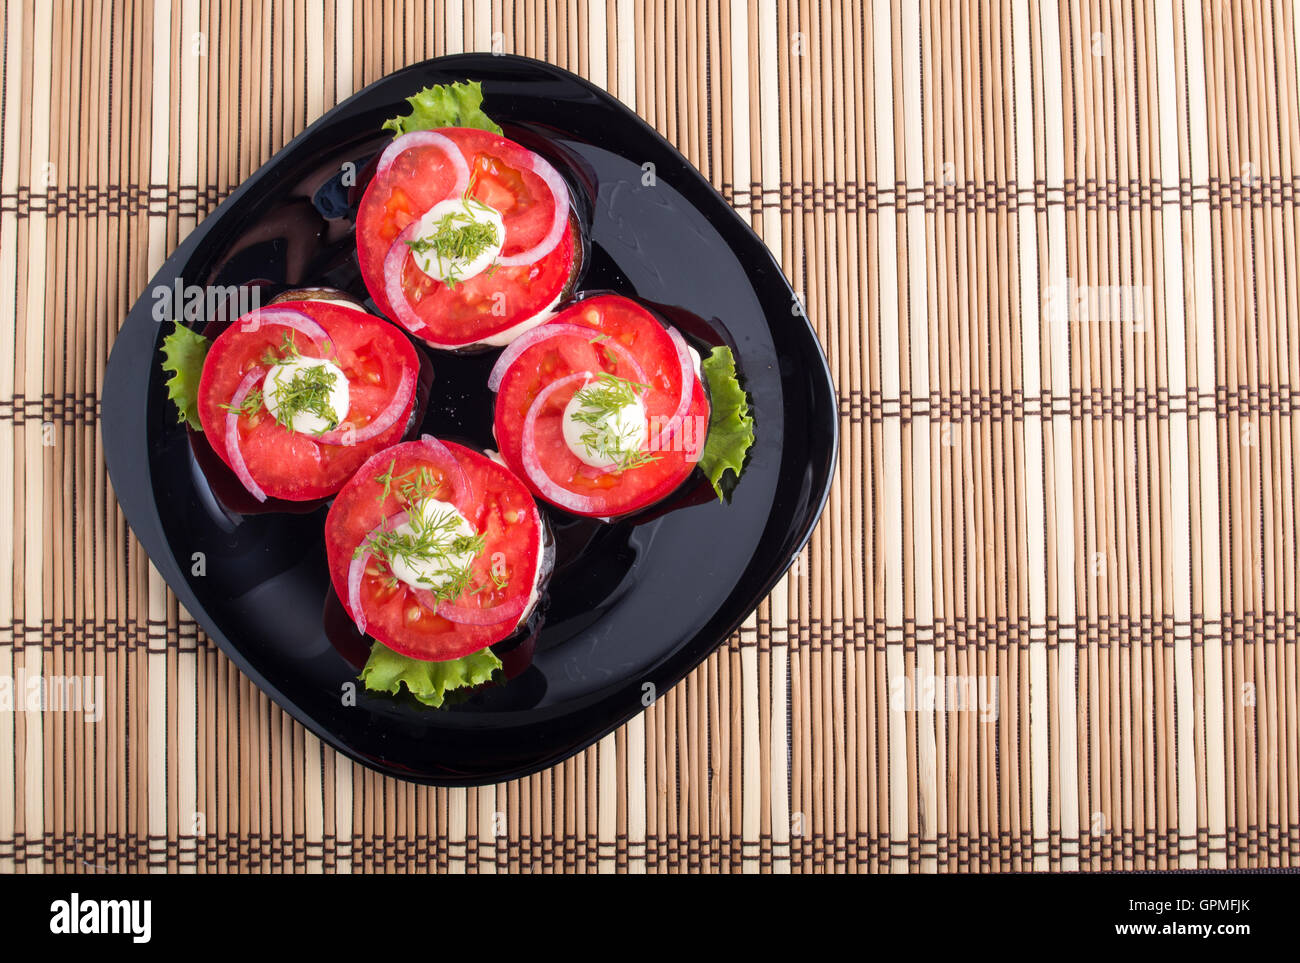 Vue de dessus d'un plat avec des tranches de tomates, la laitue et l'oignon et de nattes de bambou marron Banque D'Images